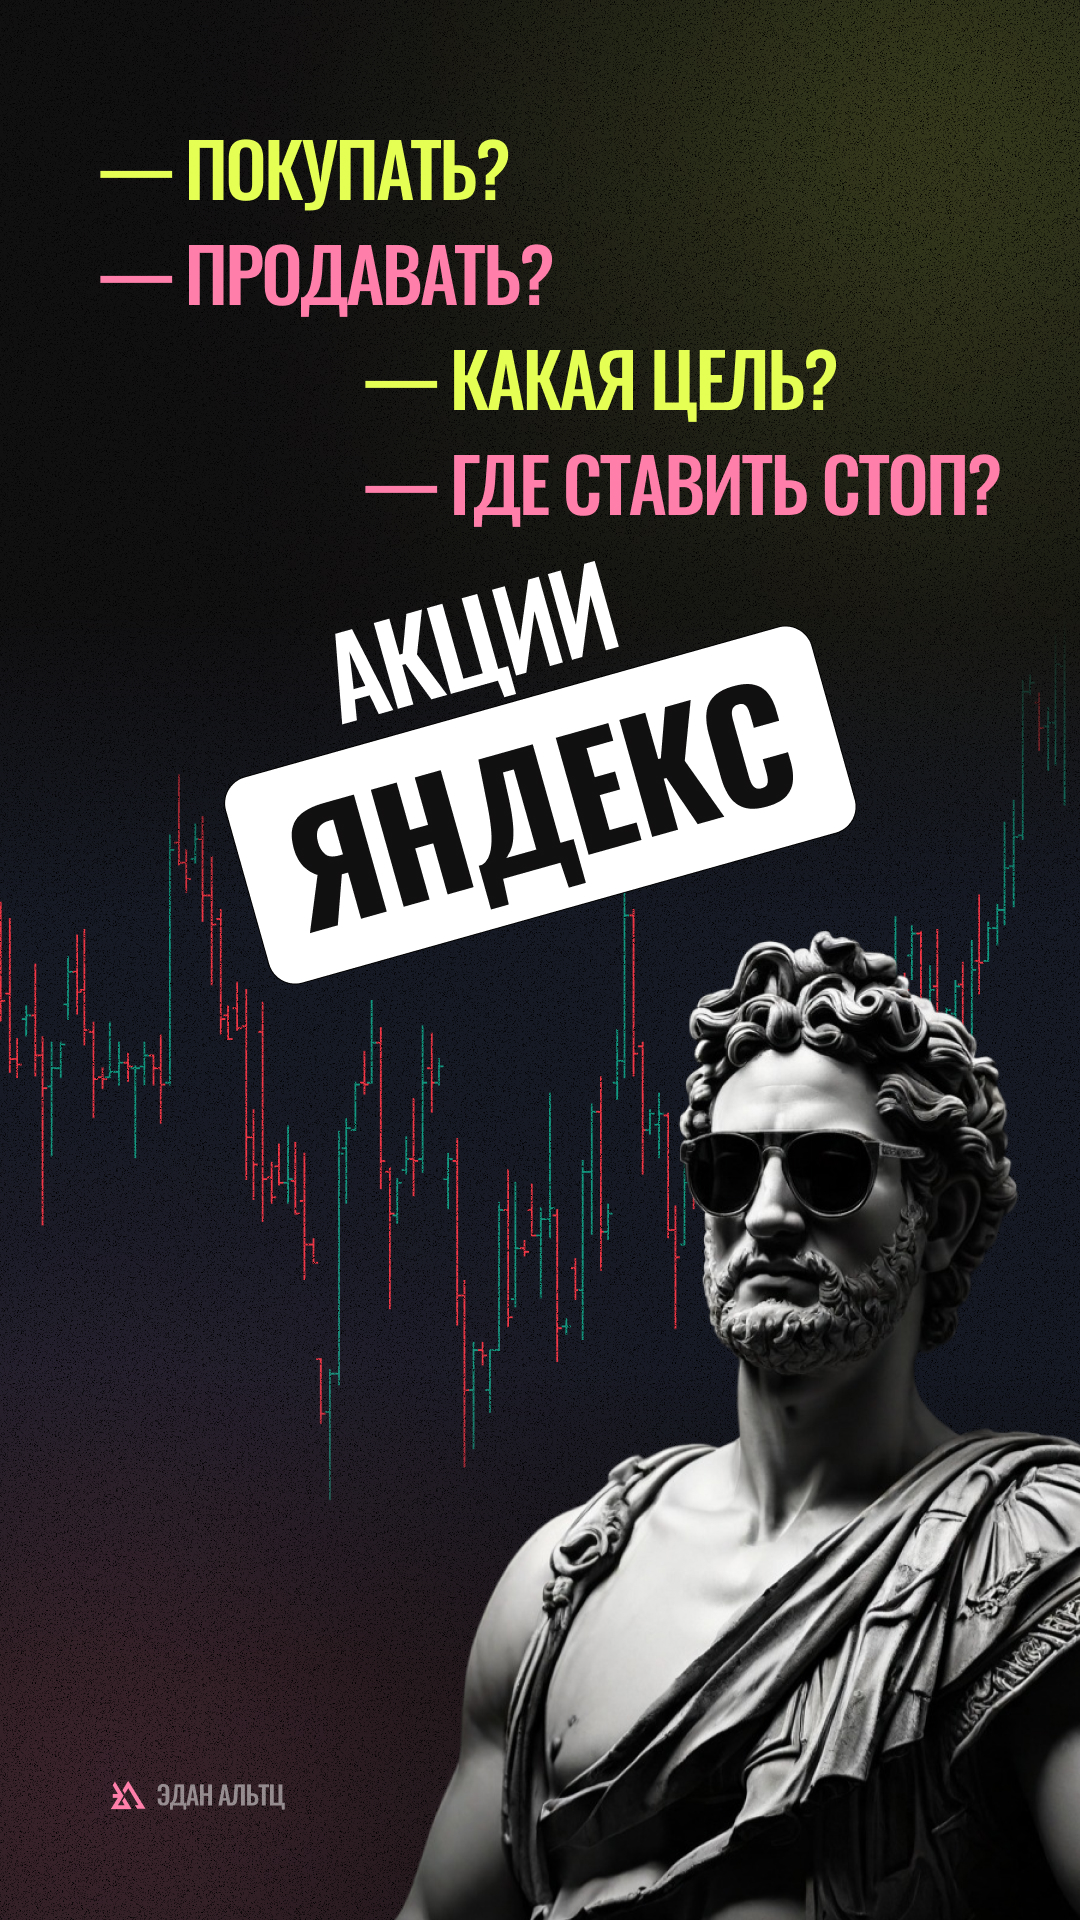 🔥 Акции Яндекс $YNDX — идея \ цели \ стопы \ обзор